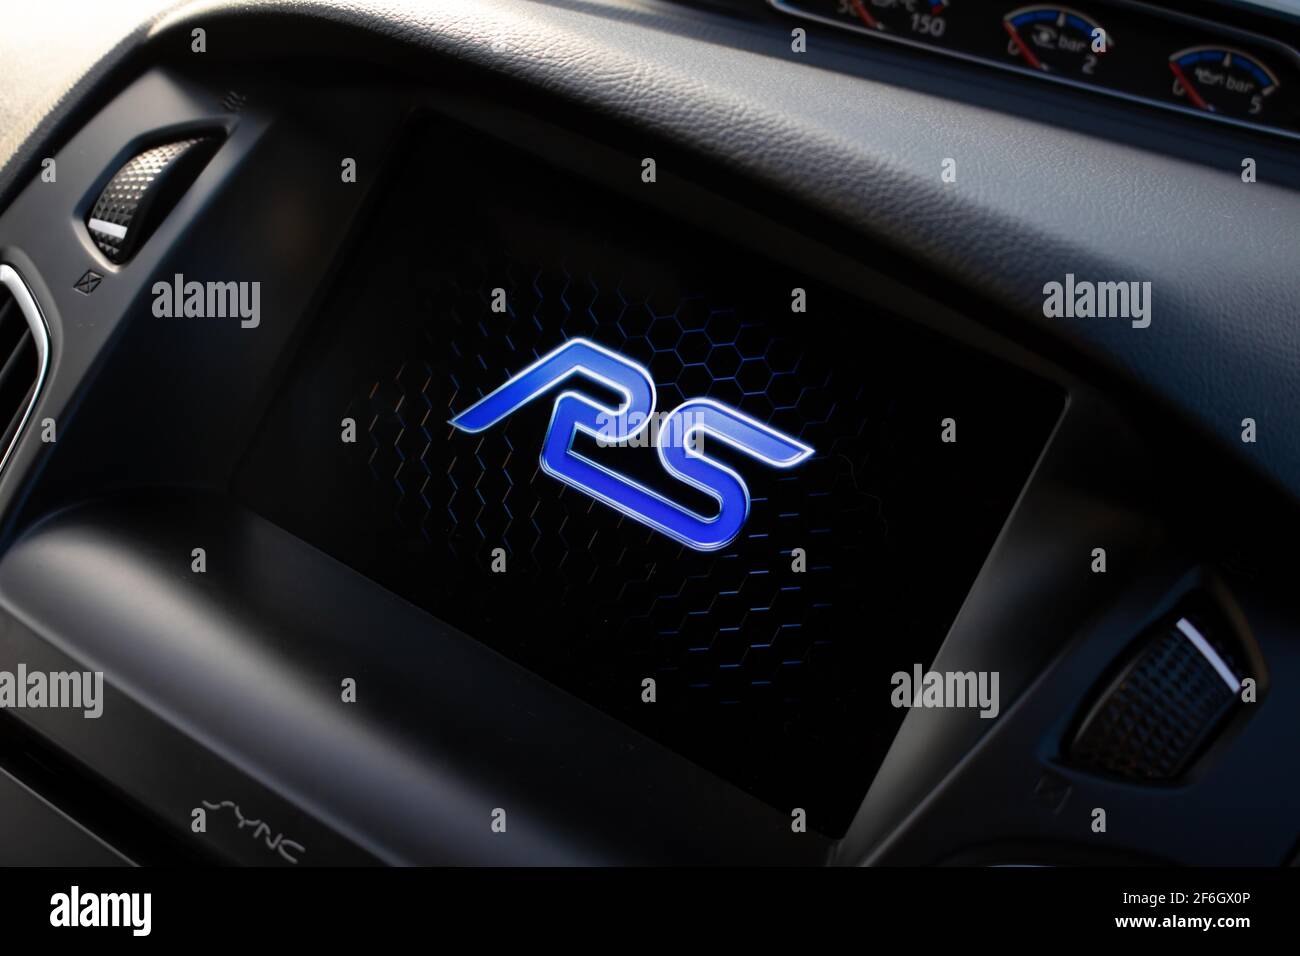 Ein 2018 Ford Focus RS mit Touchscreen-Mittelkonsole Navigationsbildschirm mit RS-Logo-Modellbezeichnung Stockfoto